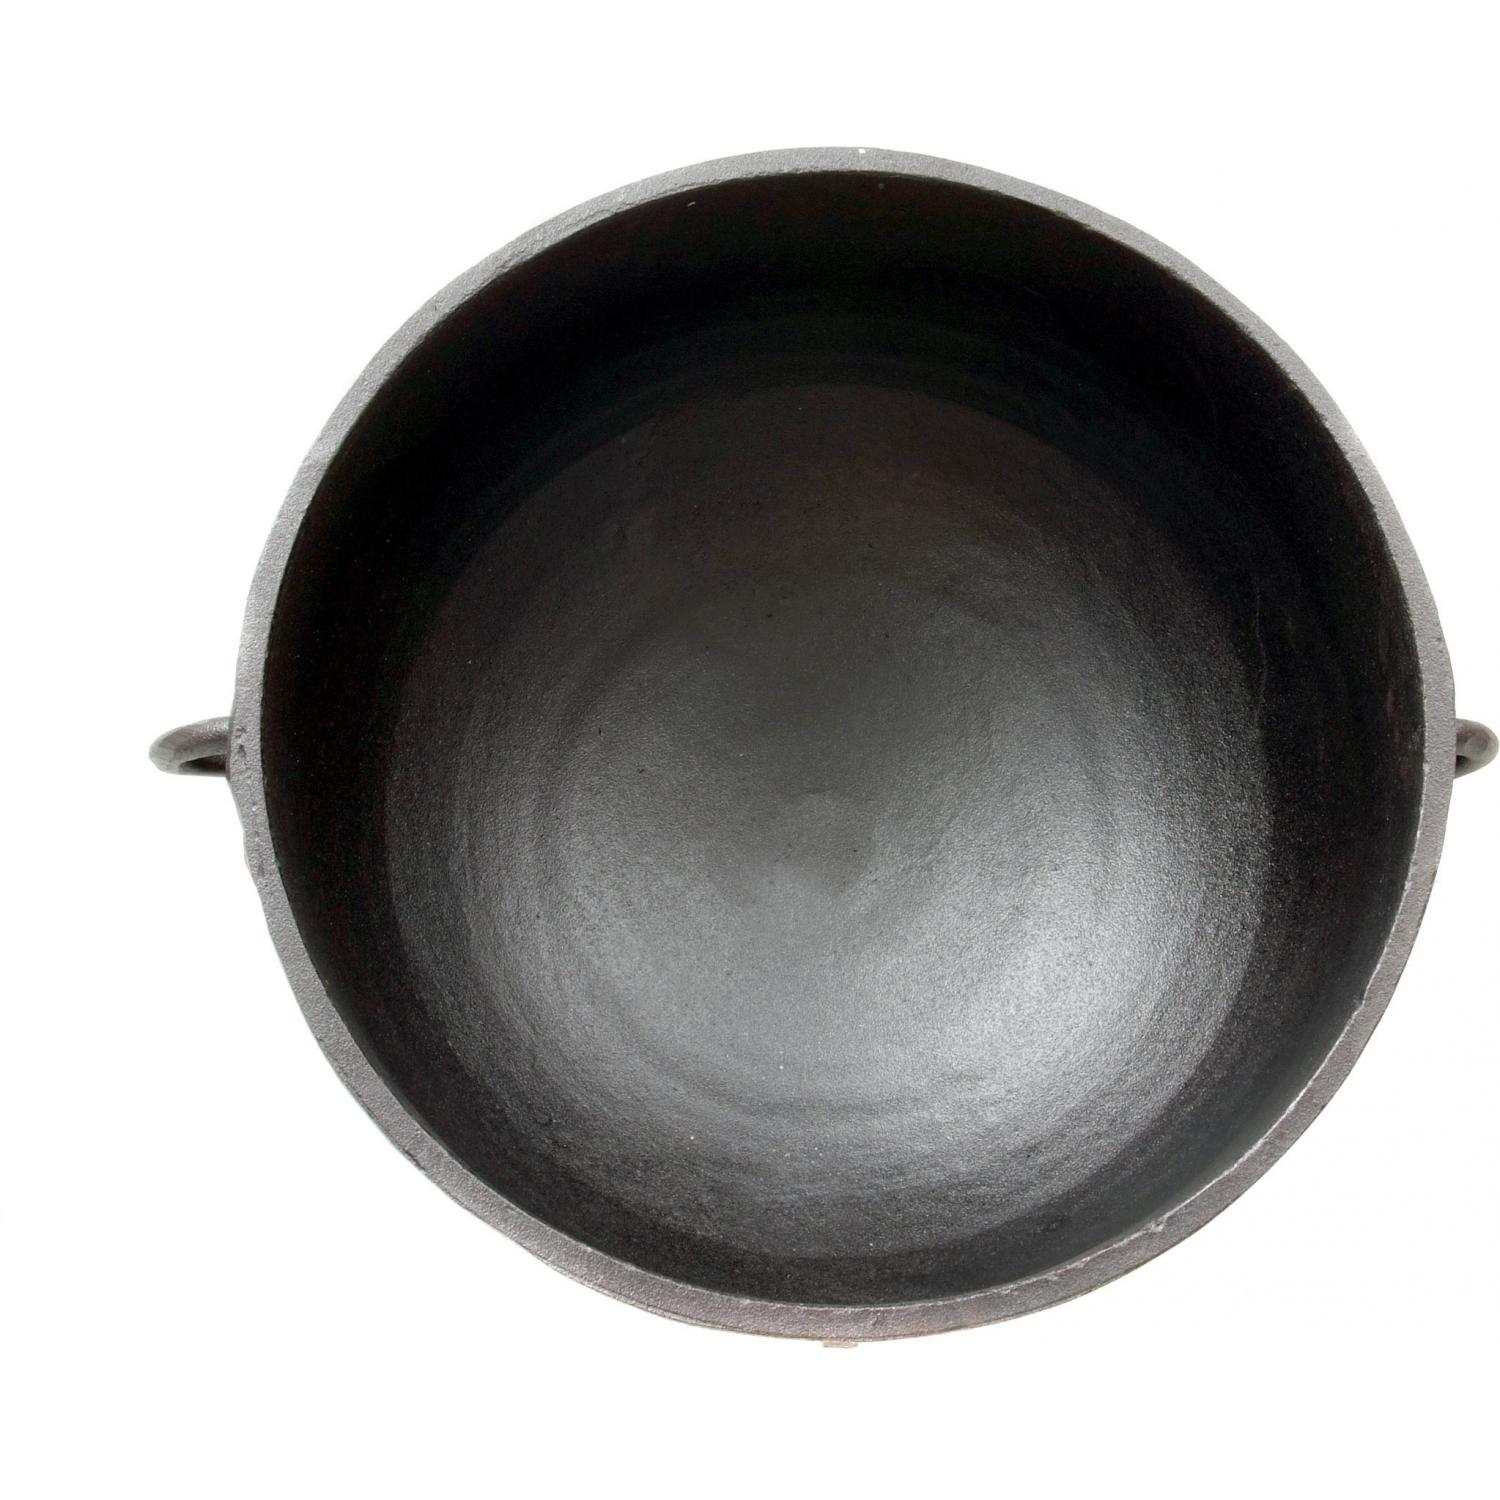 Cajun Cookware - Jambalaya Pots, Cast Iron